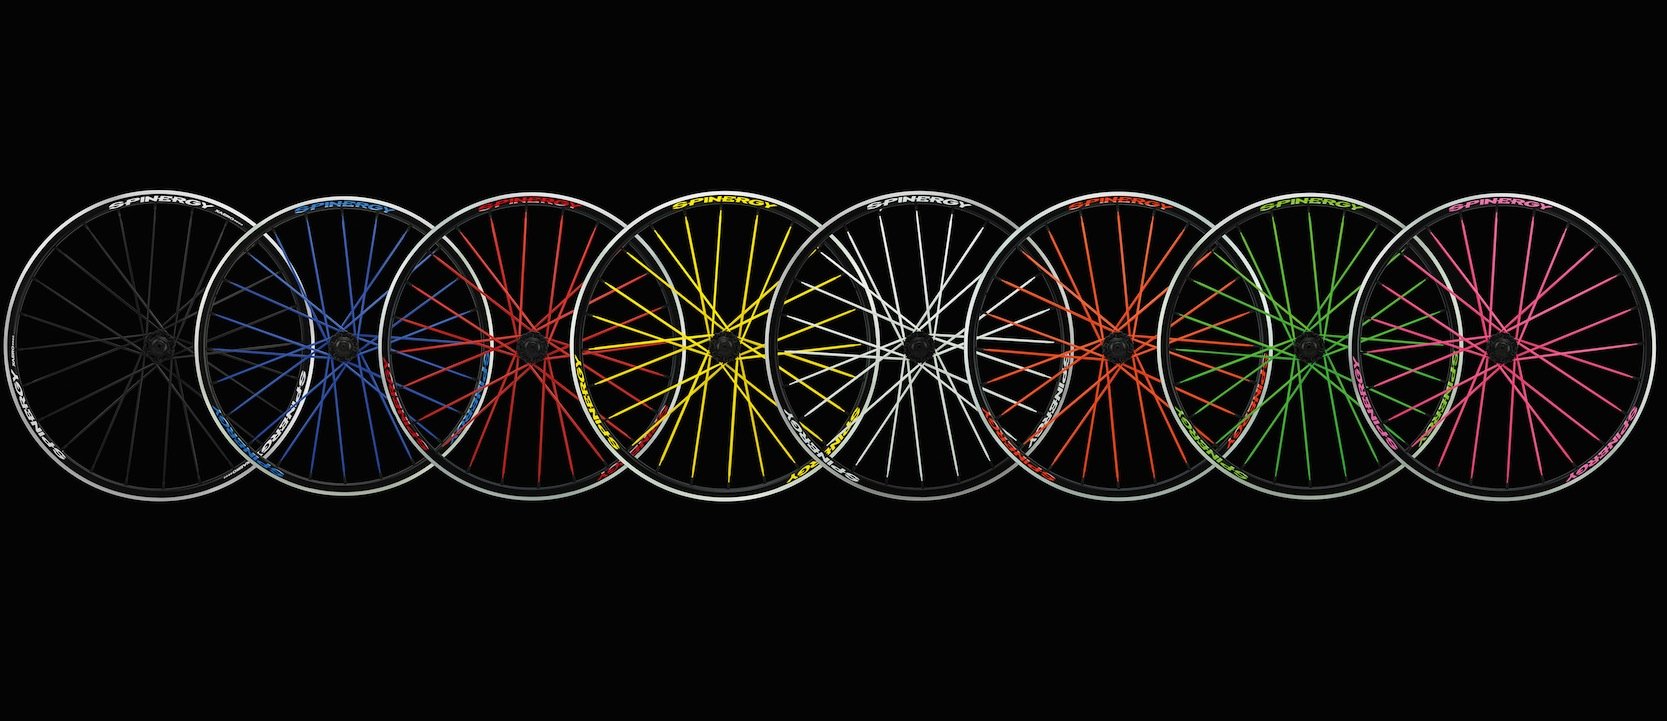 Farbige Laufräder von Spinergy: Speichen aus Stahl wiegen zwischen 4 und 6 g. Speichen aus Hightechn-Fasern sind nur halb so schwer.